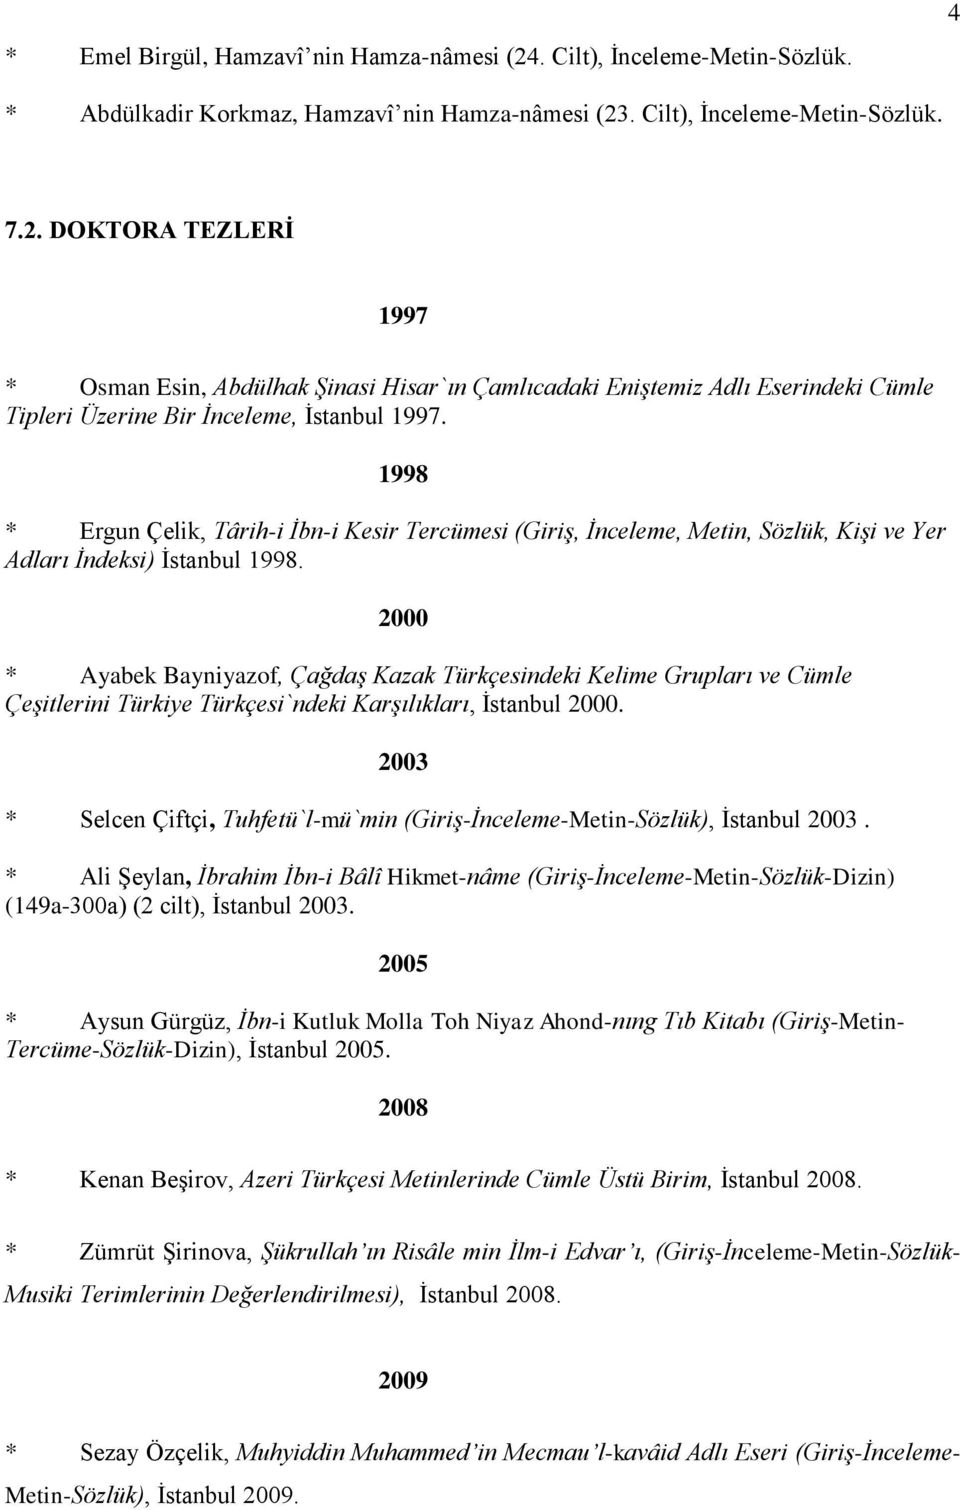 2000 * Ayabek Bayniyazof, Çağdaş Kazak Türkçesindeki Kelime Grupları ve Cümle Çeşitlerini Türkiye Türkçesi`ndeki Karşılıkları, İstanbul 2000.